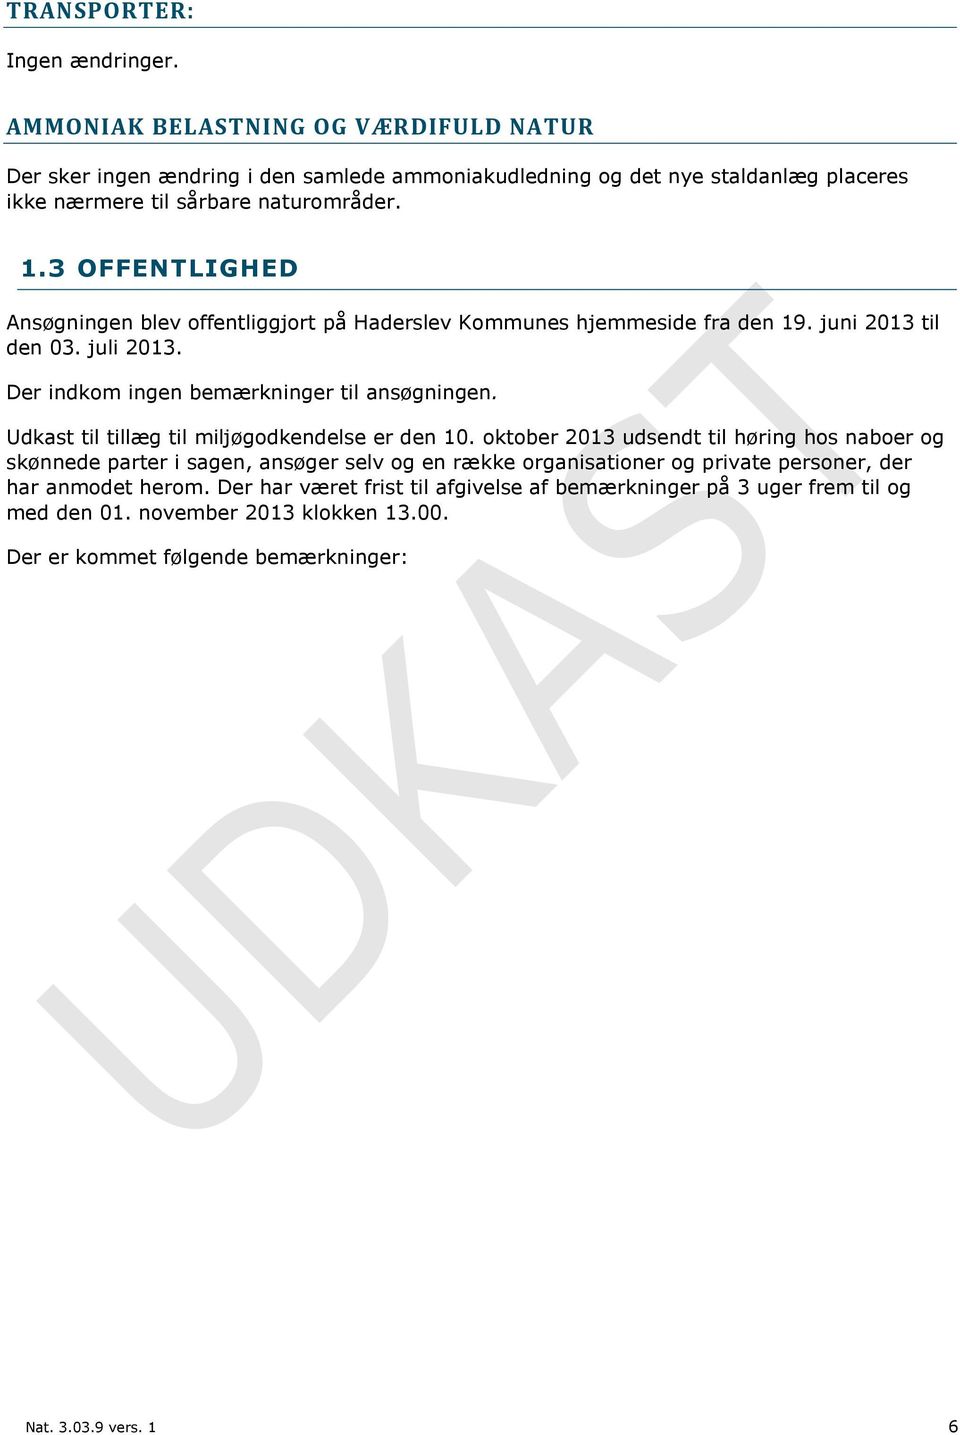 3 OFFENTLIGHED Ansøgningen blev offentliggjort på Haderslev Kommunes hjemmeside fra den 19. juni 2013 til den 03. juli 2013. Der indkom ingen bemærkninger til ansøgningen.